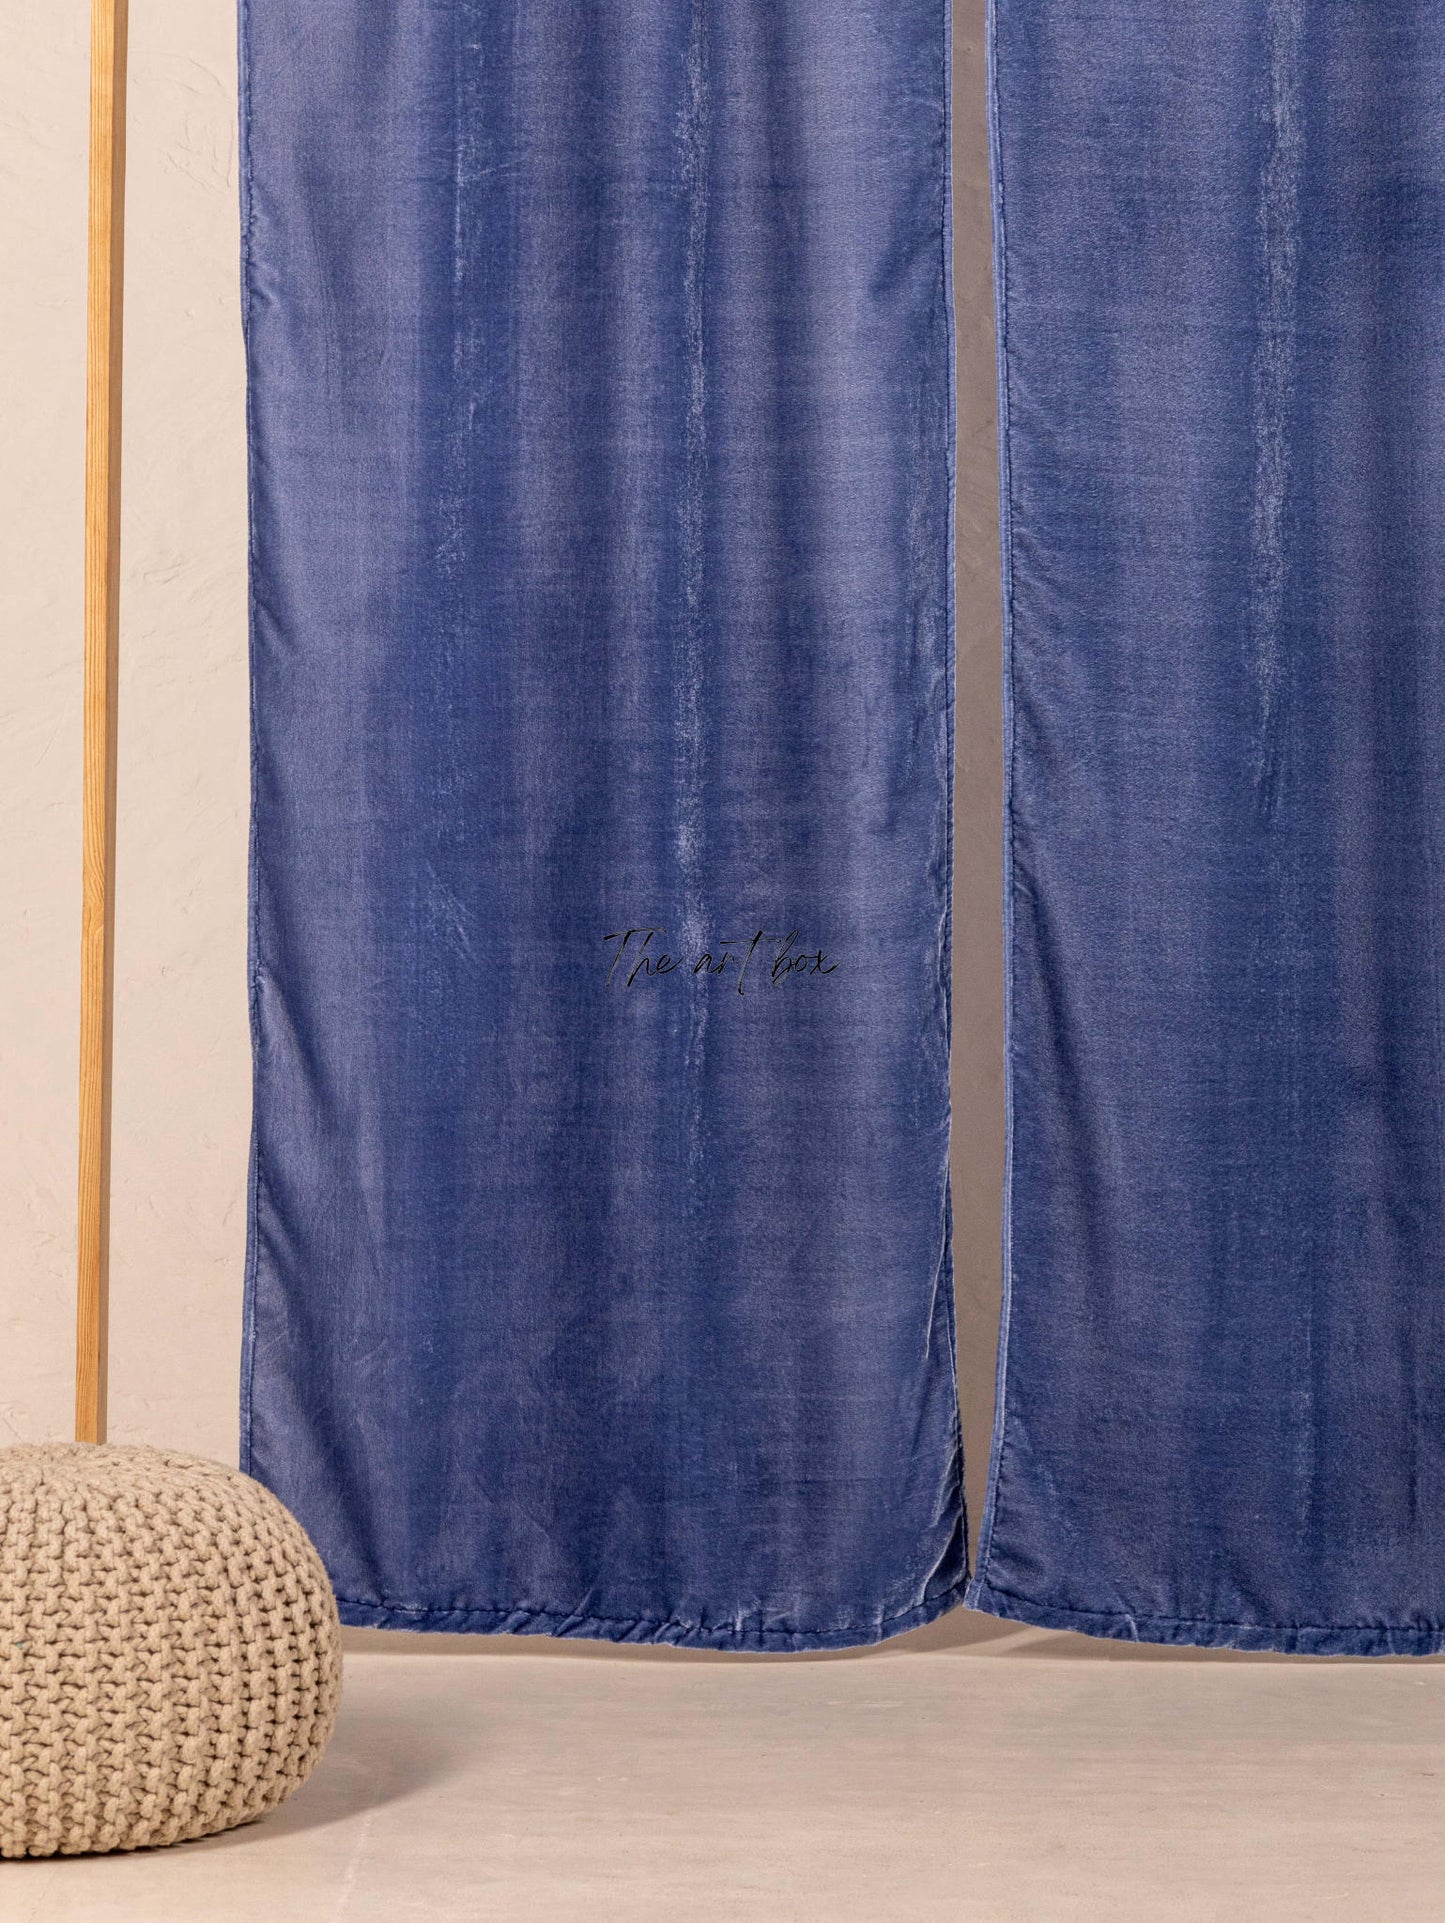 Blue Velvet Curtains - 2 panel set